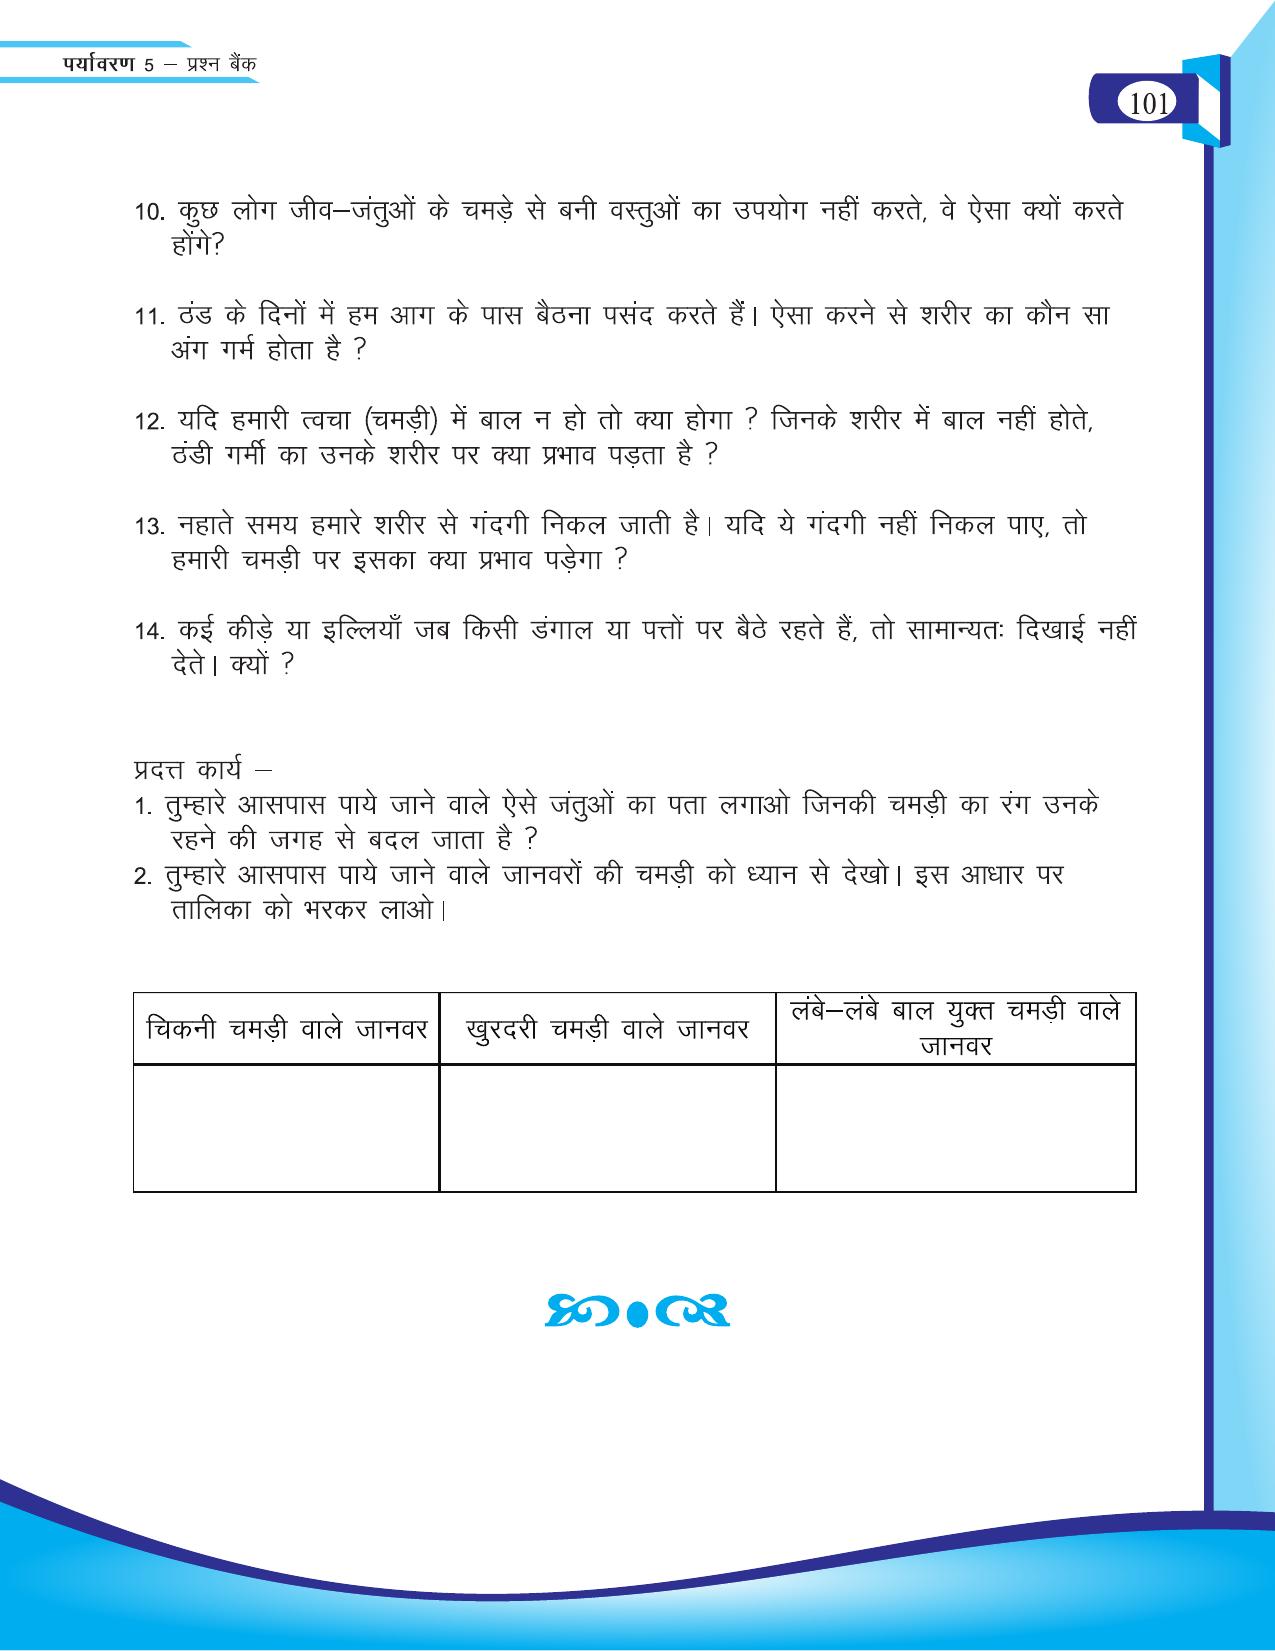 Chhattisgarh Board Class 5 EVS Question Bank 2015-16 - Page 27